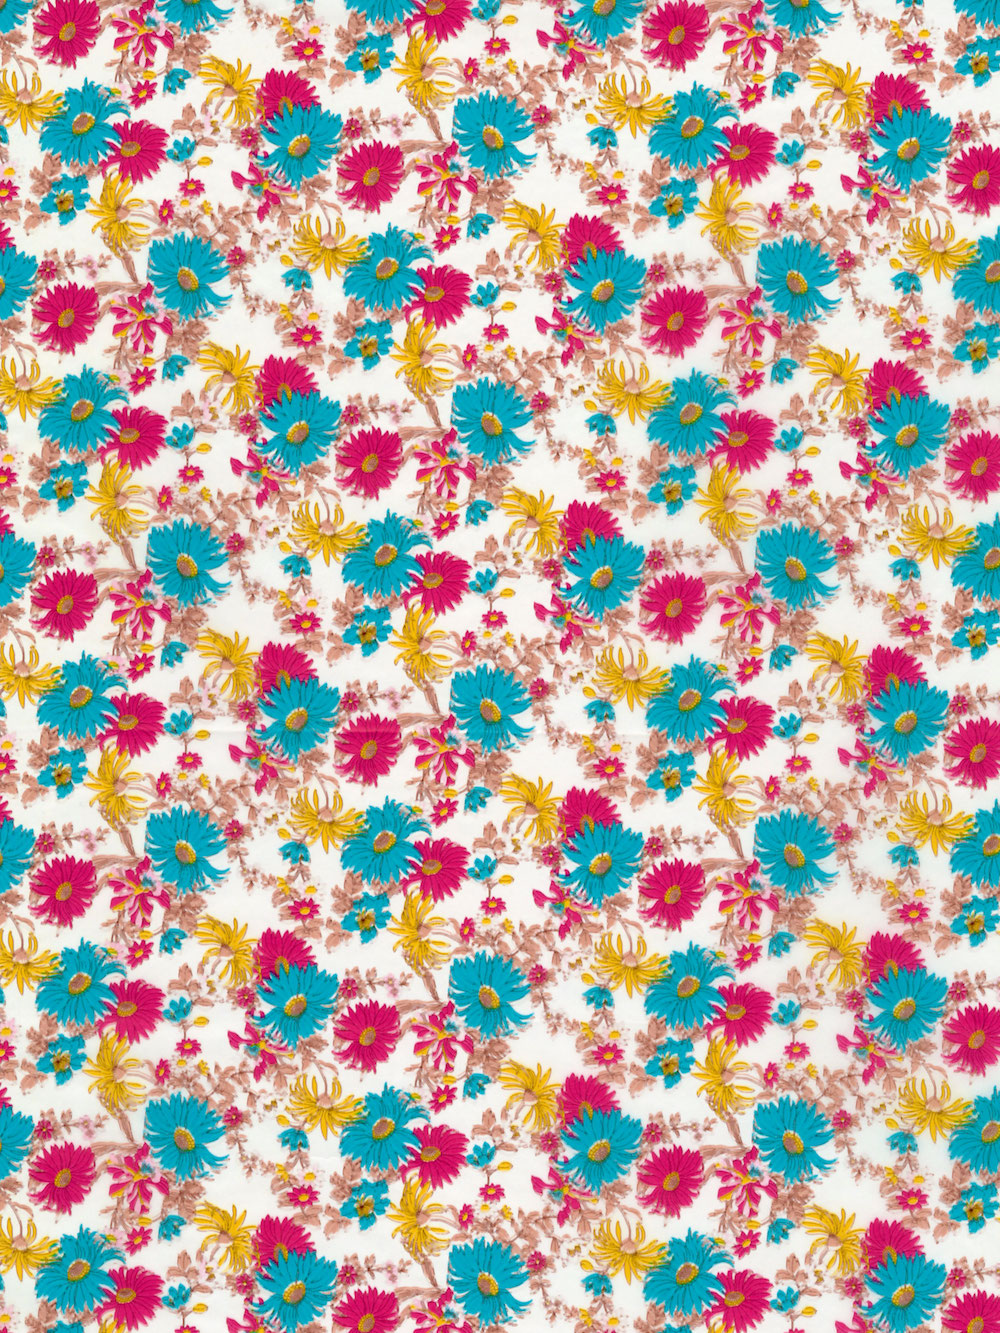 Décopatch-Papier 683 Blumen türkis/pink/gelb, 30 x 40 cm